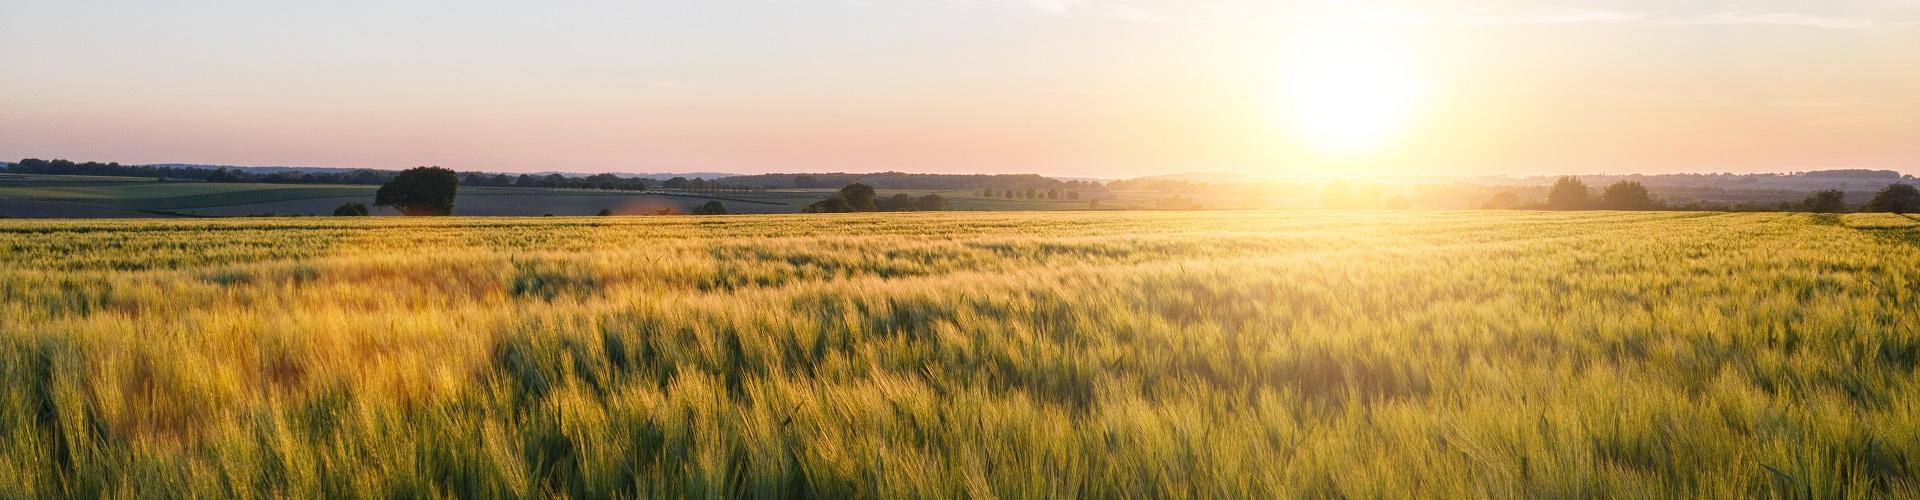 Negocio Agrario - Vistas de un campo de trigo con el amanecer